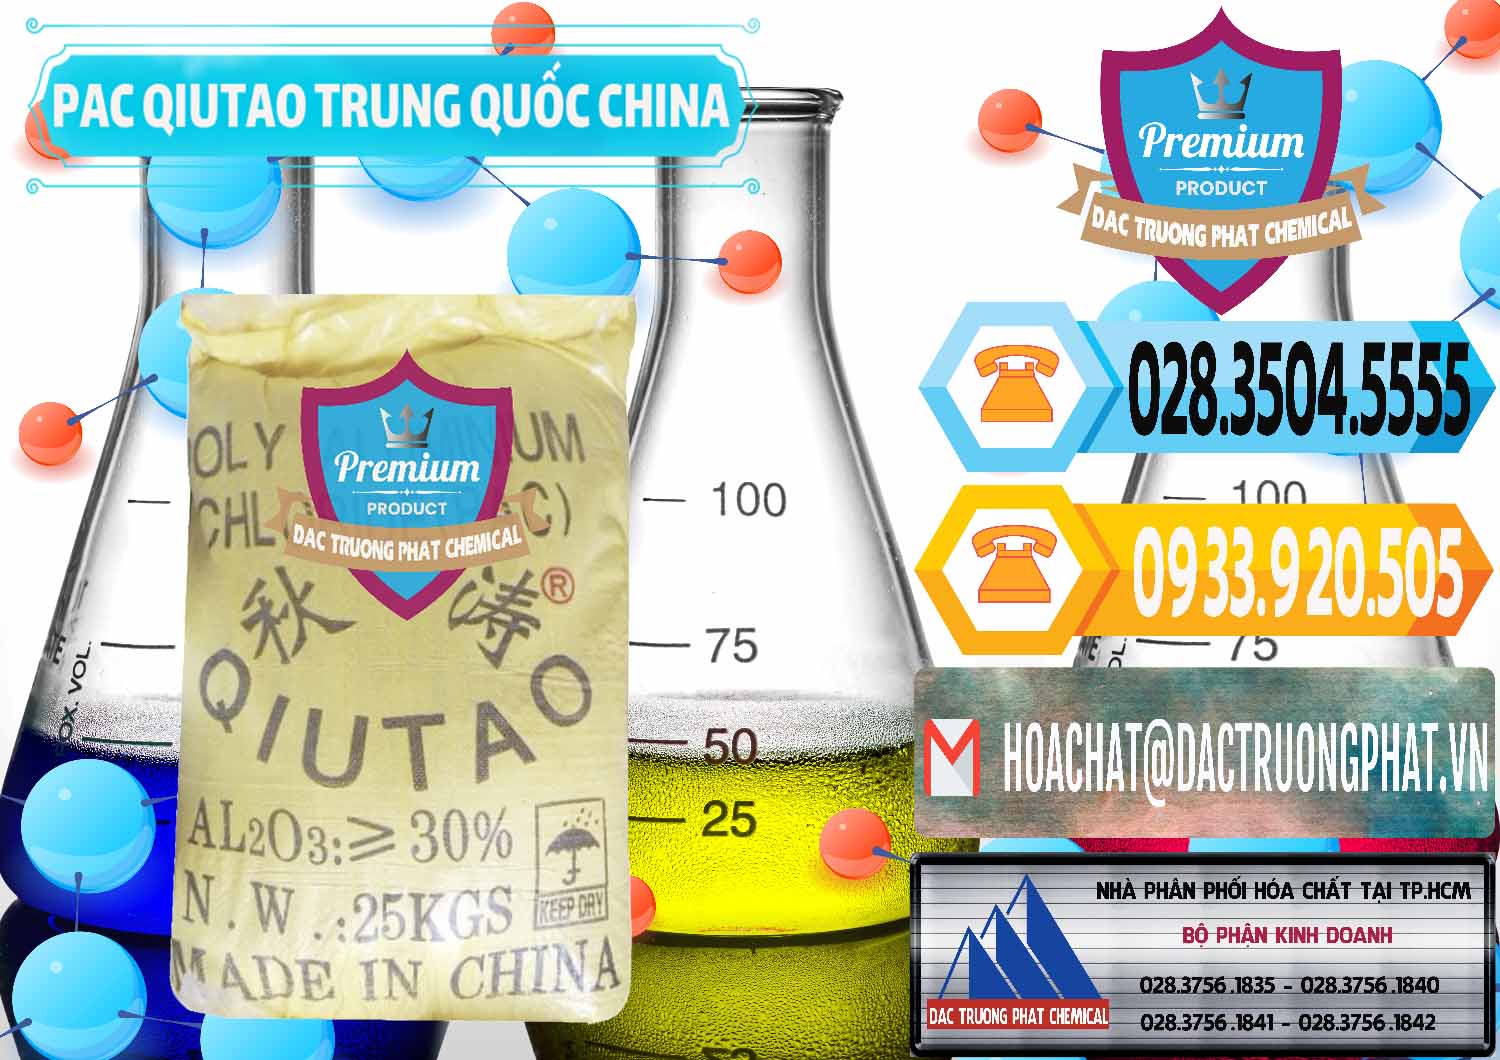 Cty bán - cung ứng PAC - Polyaluminium Chloride Qiutao Trung Quốc China - 0267 - Đơn vị chuyên phân phối - nhập khẩu hóa chất tại TP.HCM - hoachattayrua.net